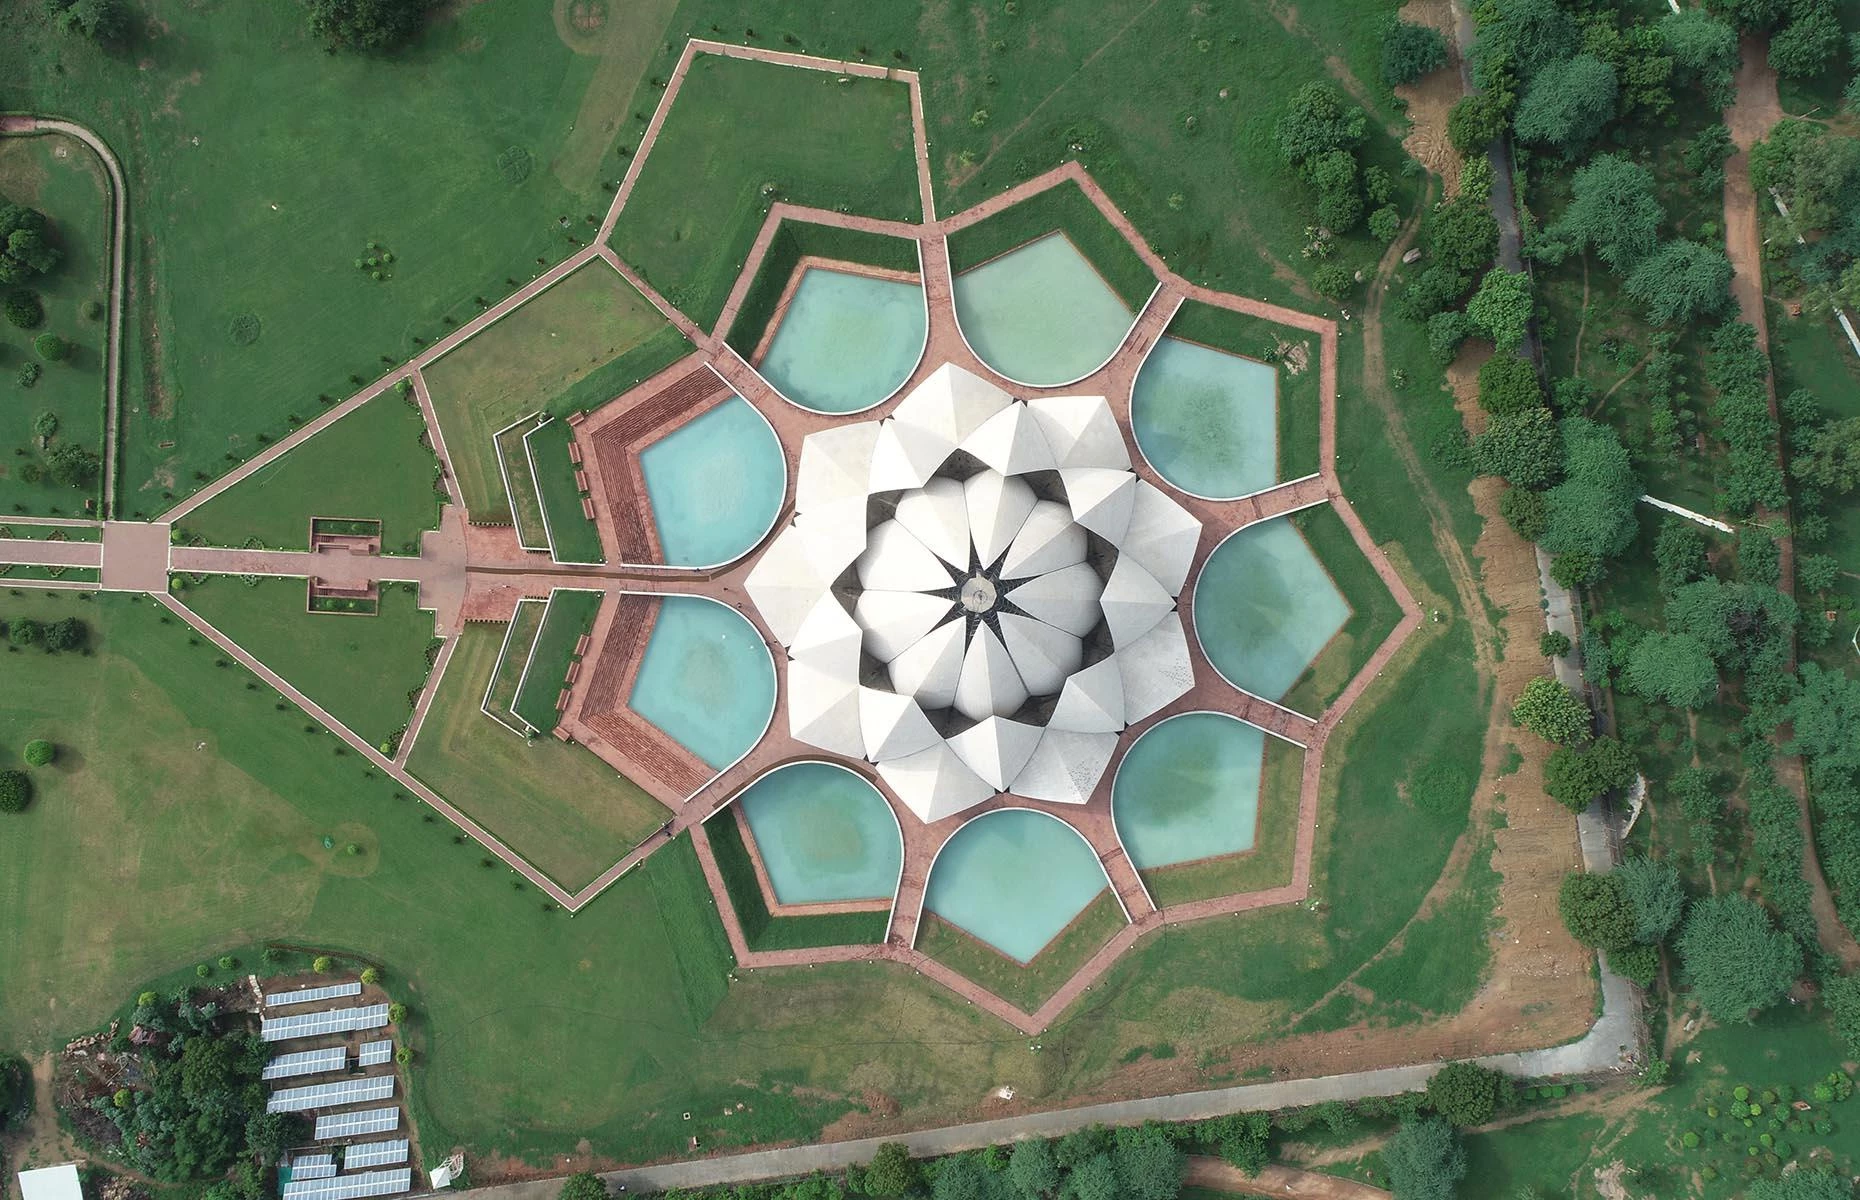 Đền Hoa sen, New Delhi, Ấn Độ: Đền Hoa sen ở New Delhi trông ấn tượng từ mọi góc nhìn. Được xây dựng vào những năm 1980, tòa nhà Baháʼí giáo linh thiêng được thiết kế để trông giống một bông hoa sen. Xung quanh ngôi đền là 9 hồ nước với số 9 là con số "hoàn hảo" trong tín ngưỡng Baháʼí. Ảnh: Vibgyor Studios.